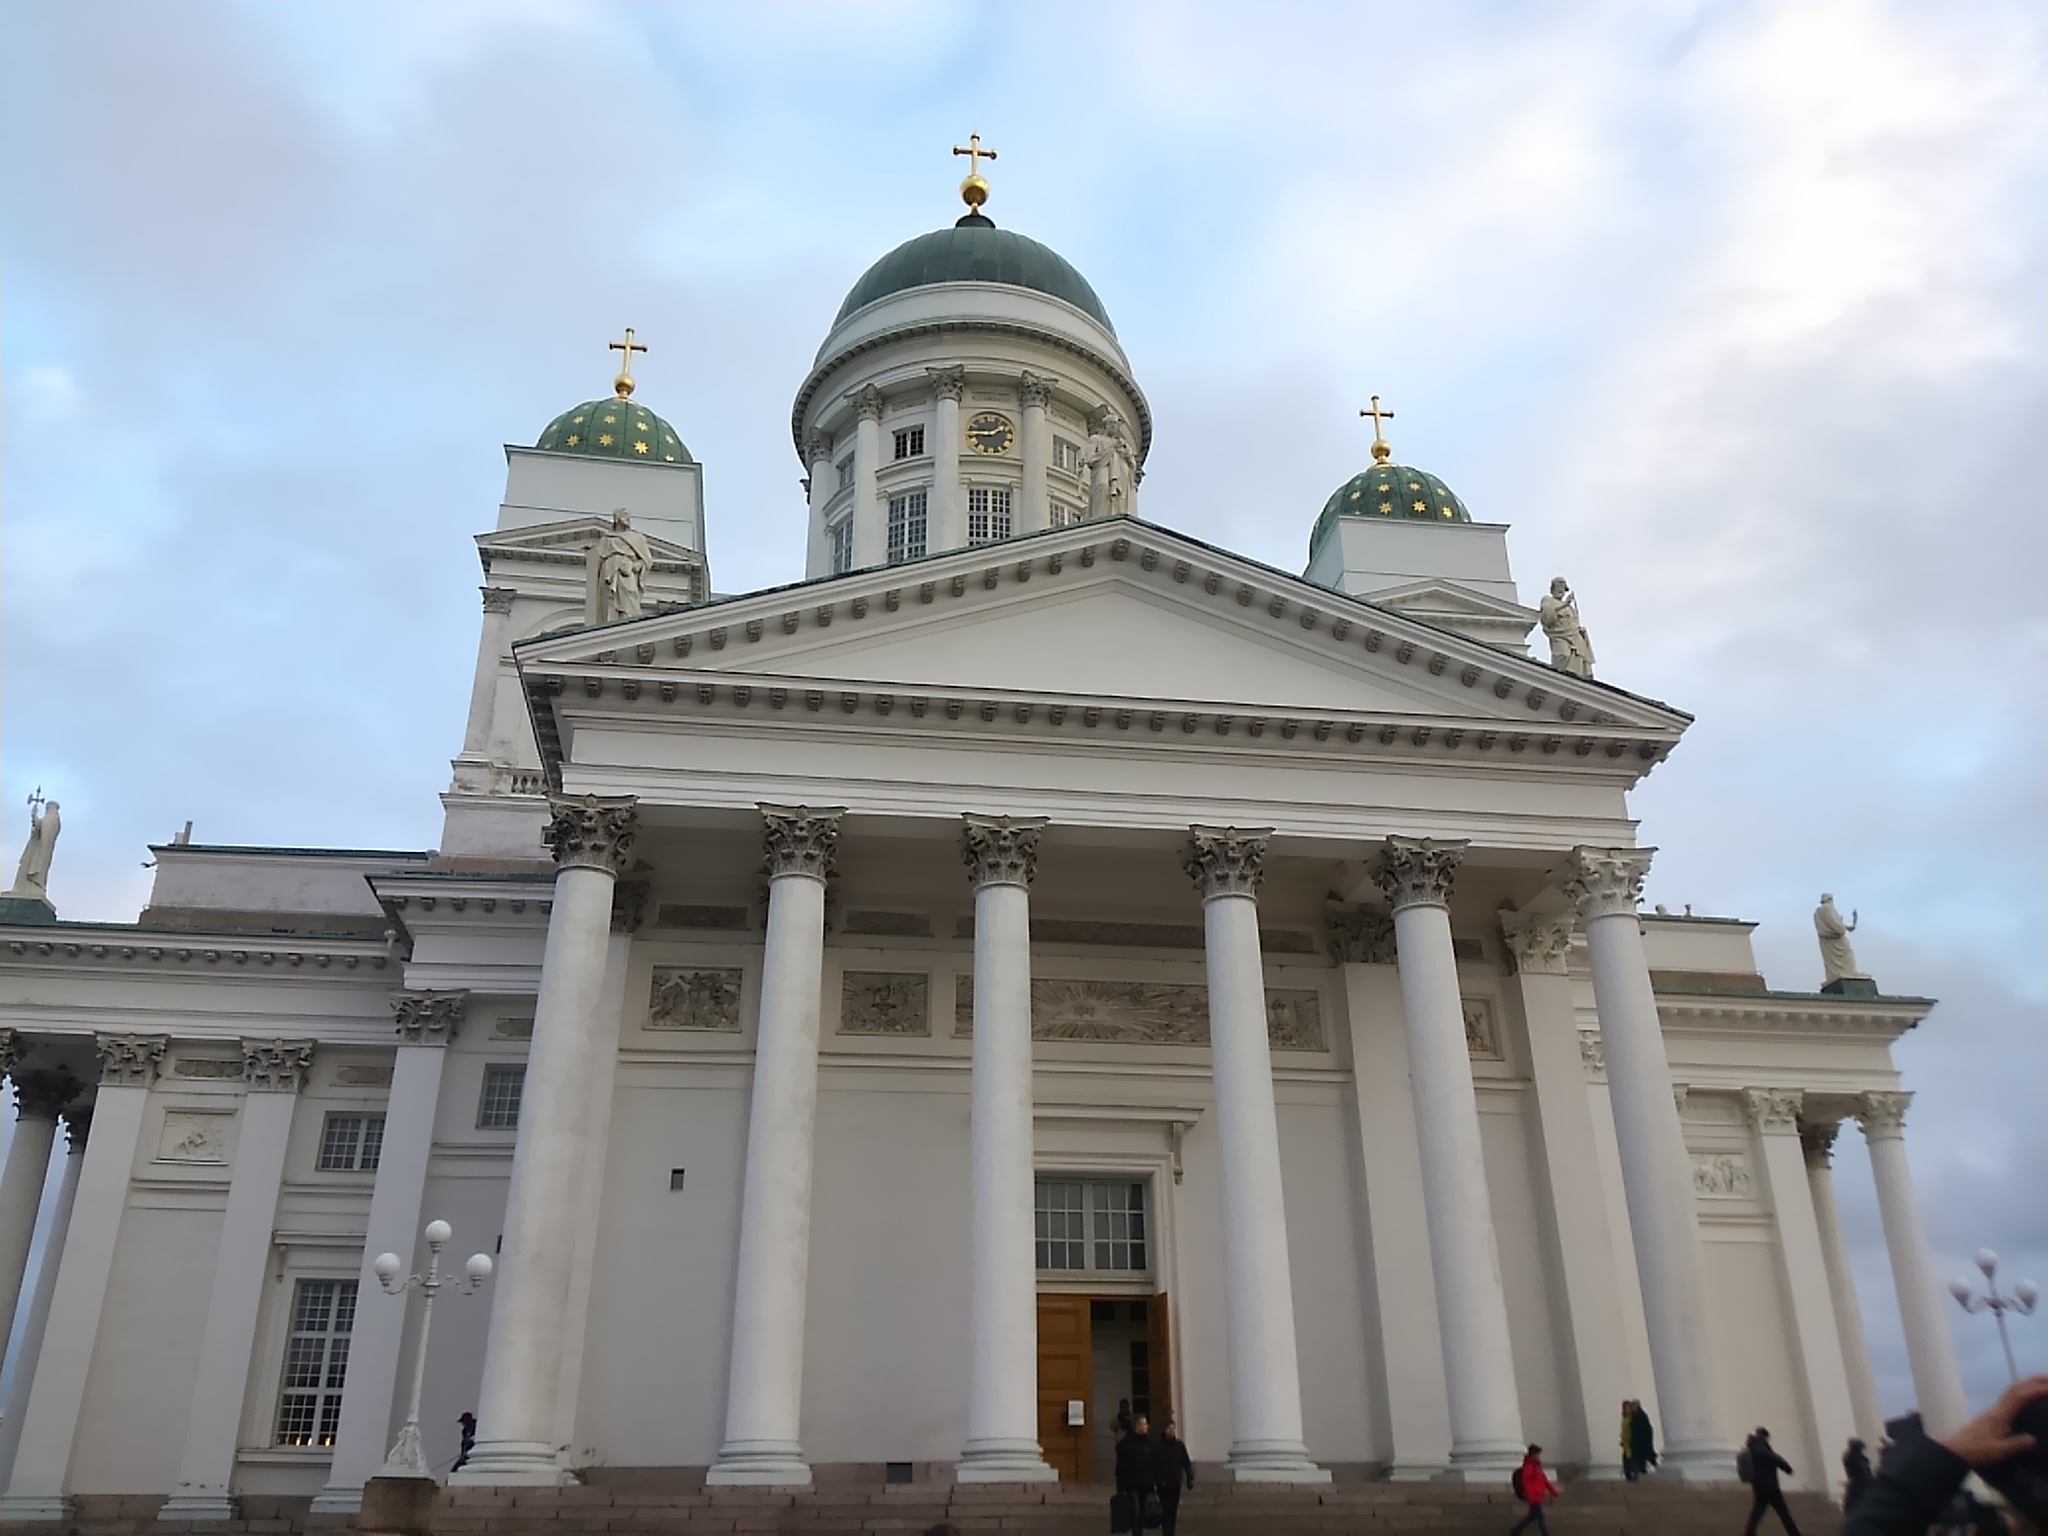 ヘルシンキ大聖堂。街の中心に堂々とそびえ立つ。